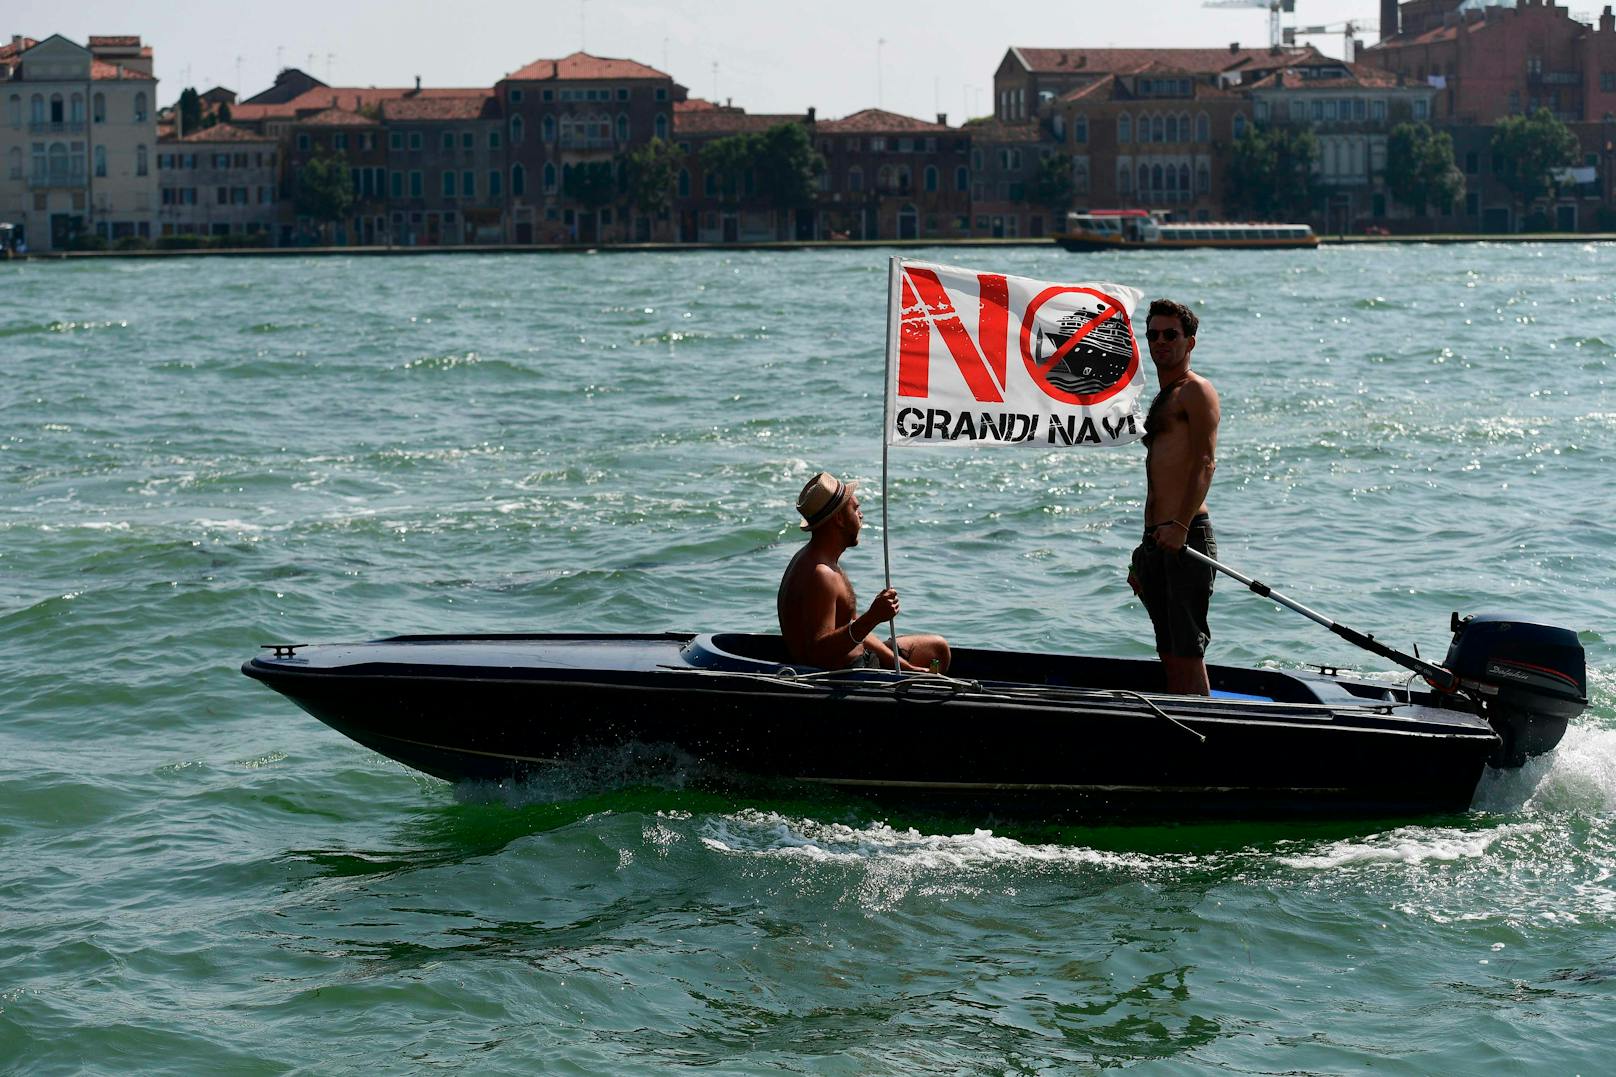 Nach jahrelangen Protesten dürfen große Schiffe vor San Marco und auf dem Giudecca-Kanal ab dem 1. August nicht mehr durchfahren. Foto am 08.06.2019 aufgenommen.